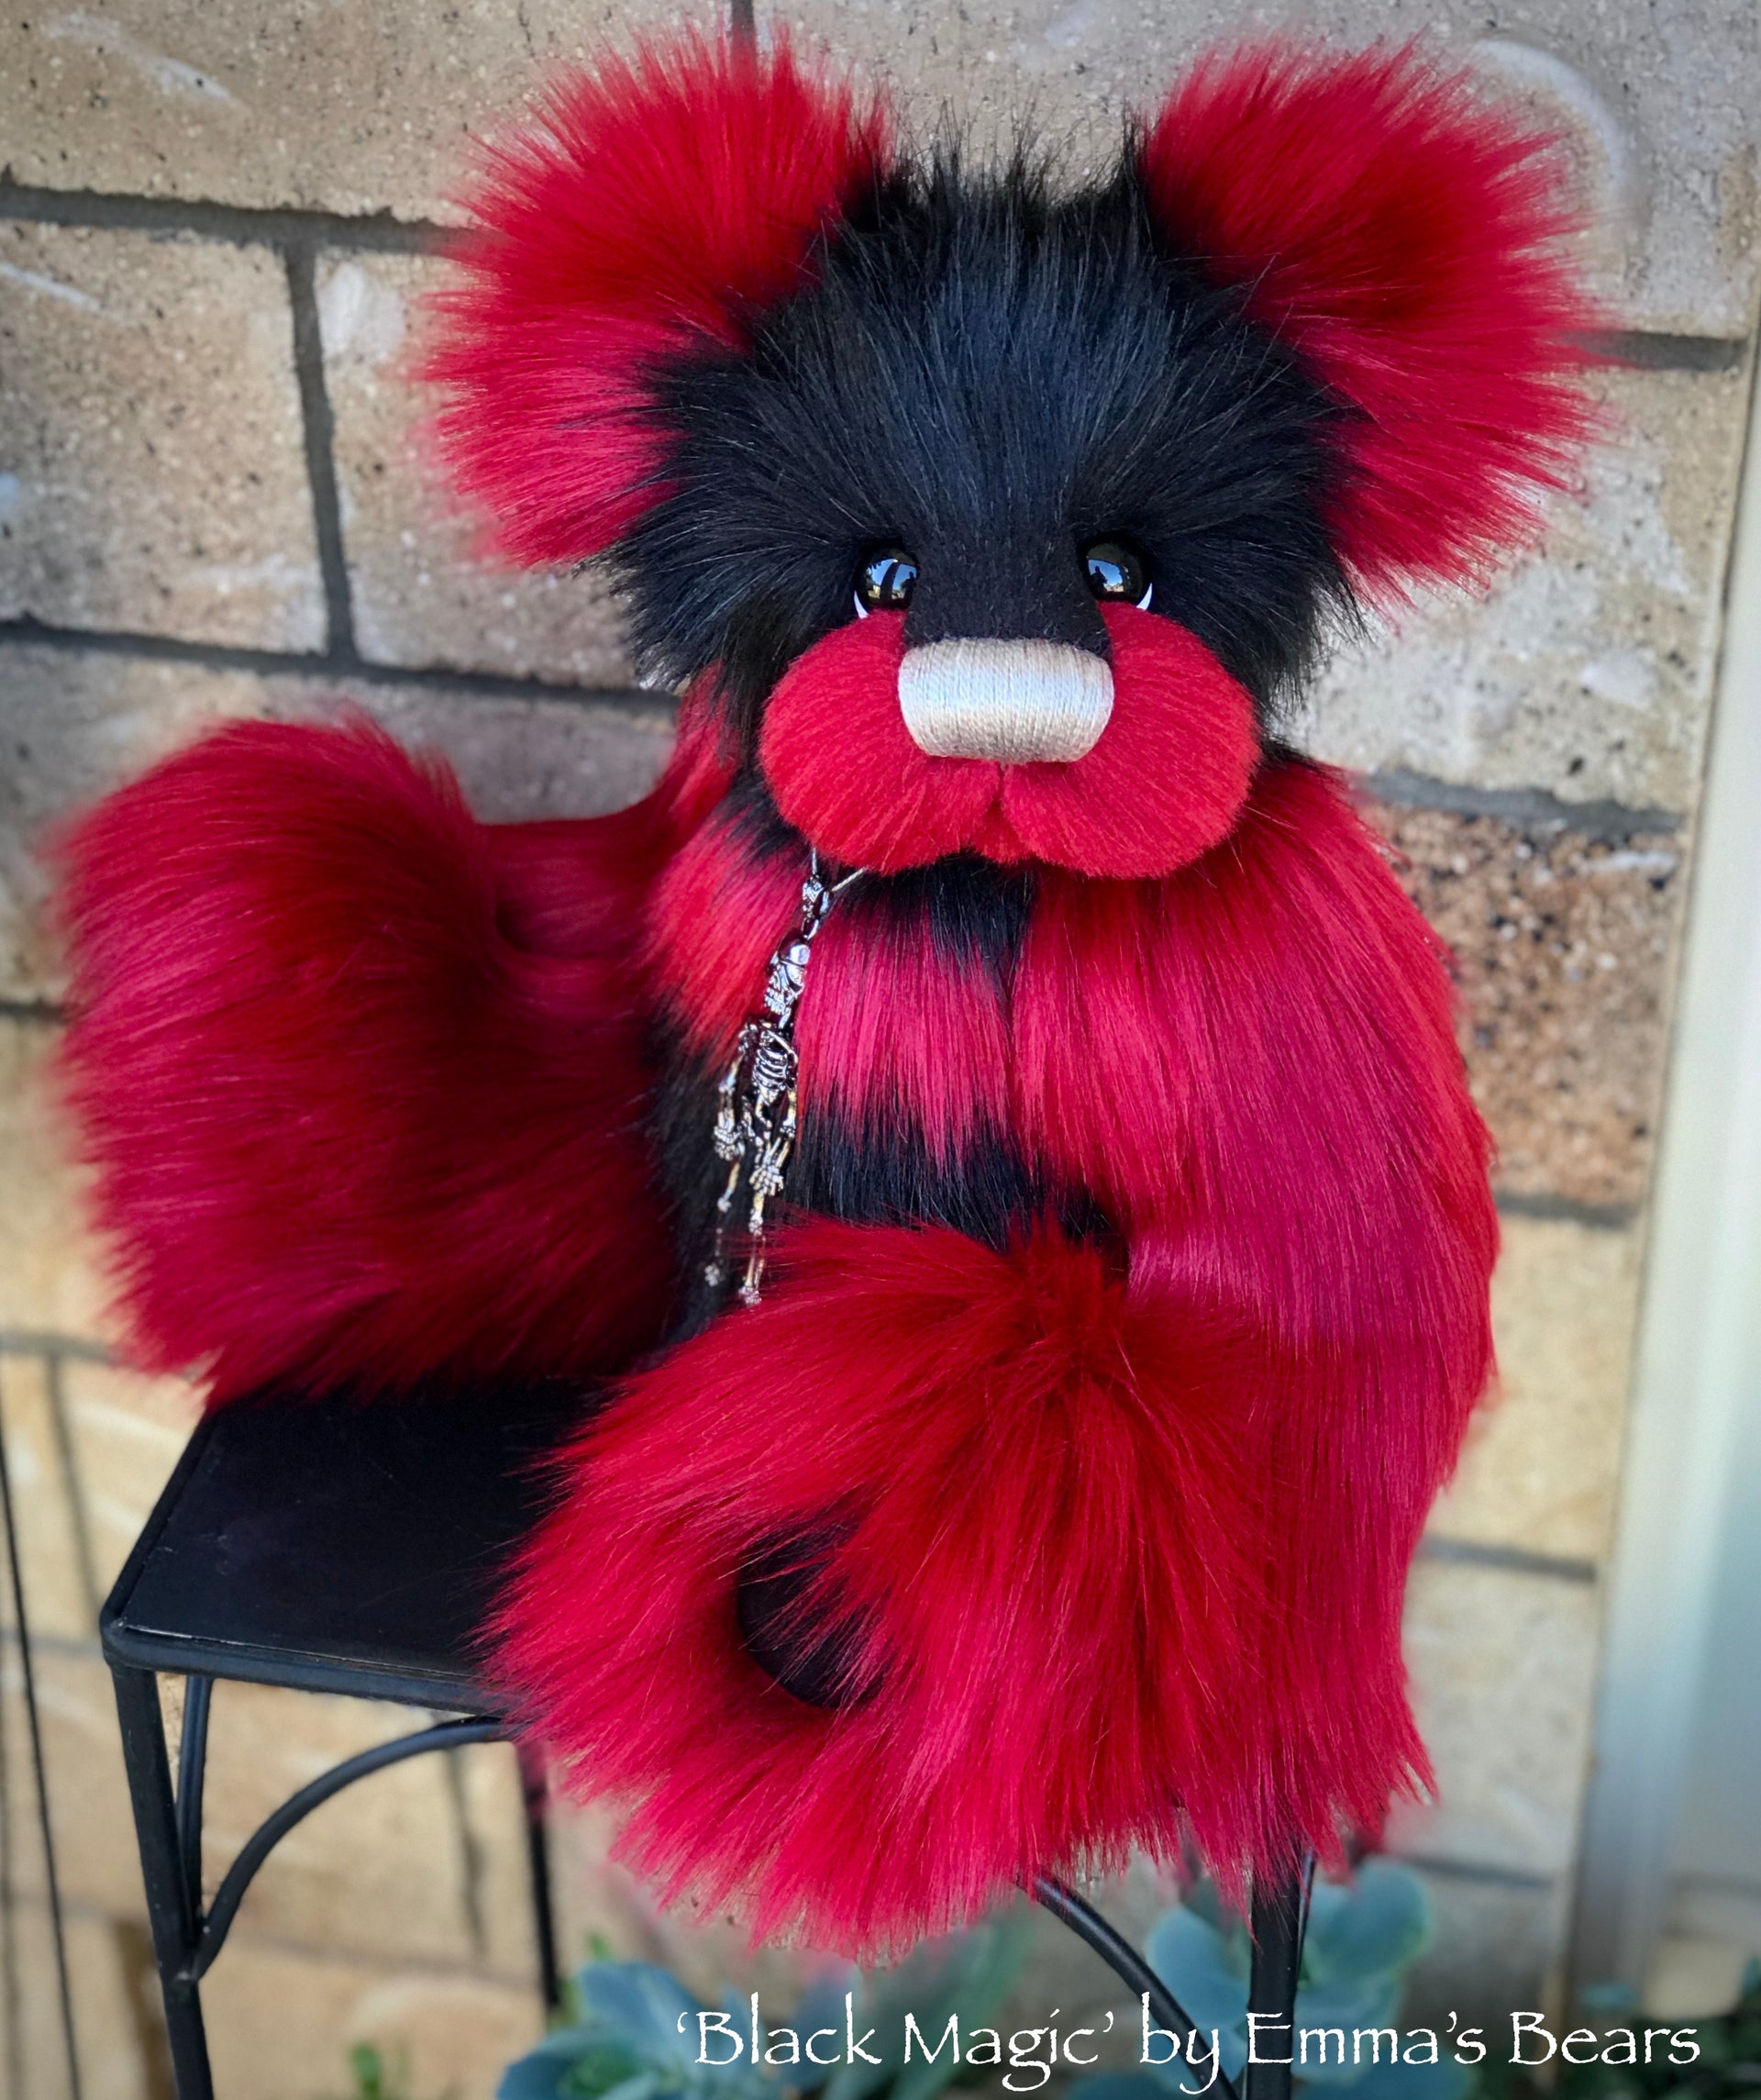 Black Magic - 16" faux fur Artist Bear by Emma's Bears - OOAK